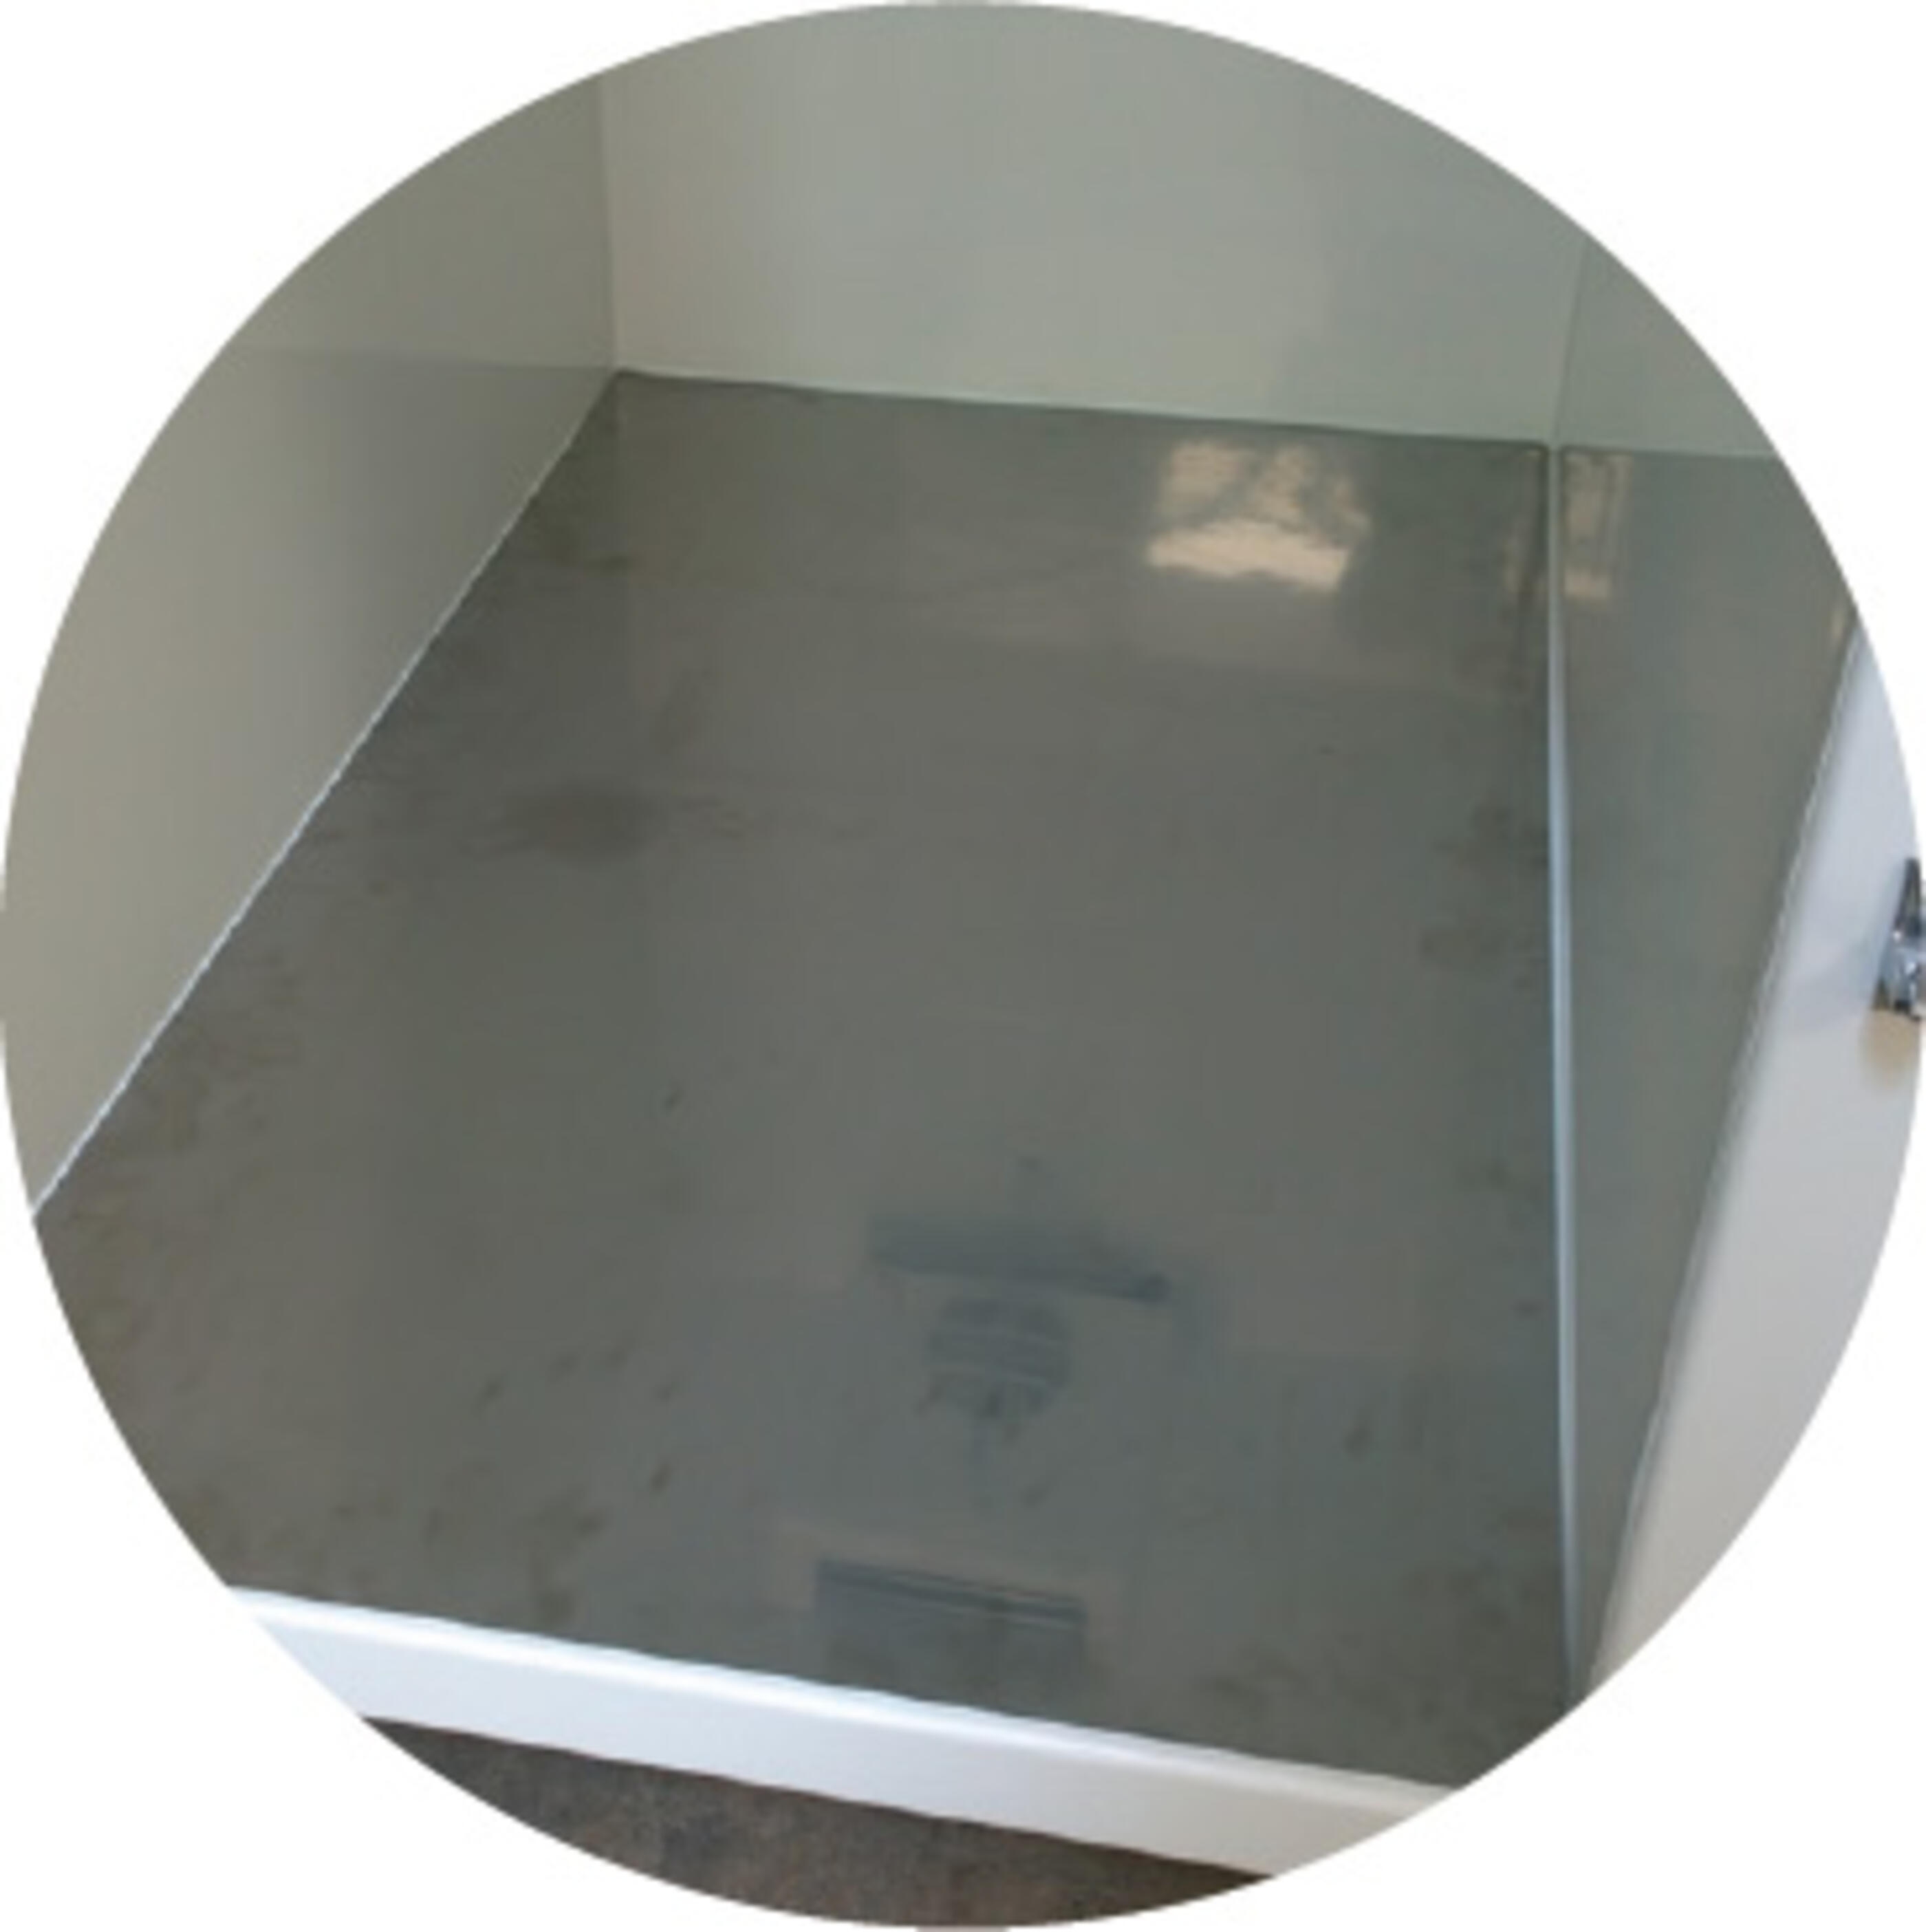 conteneur-frigorifique-option-plancher-inox